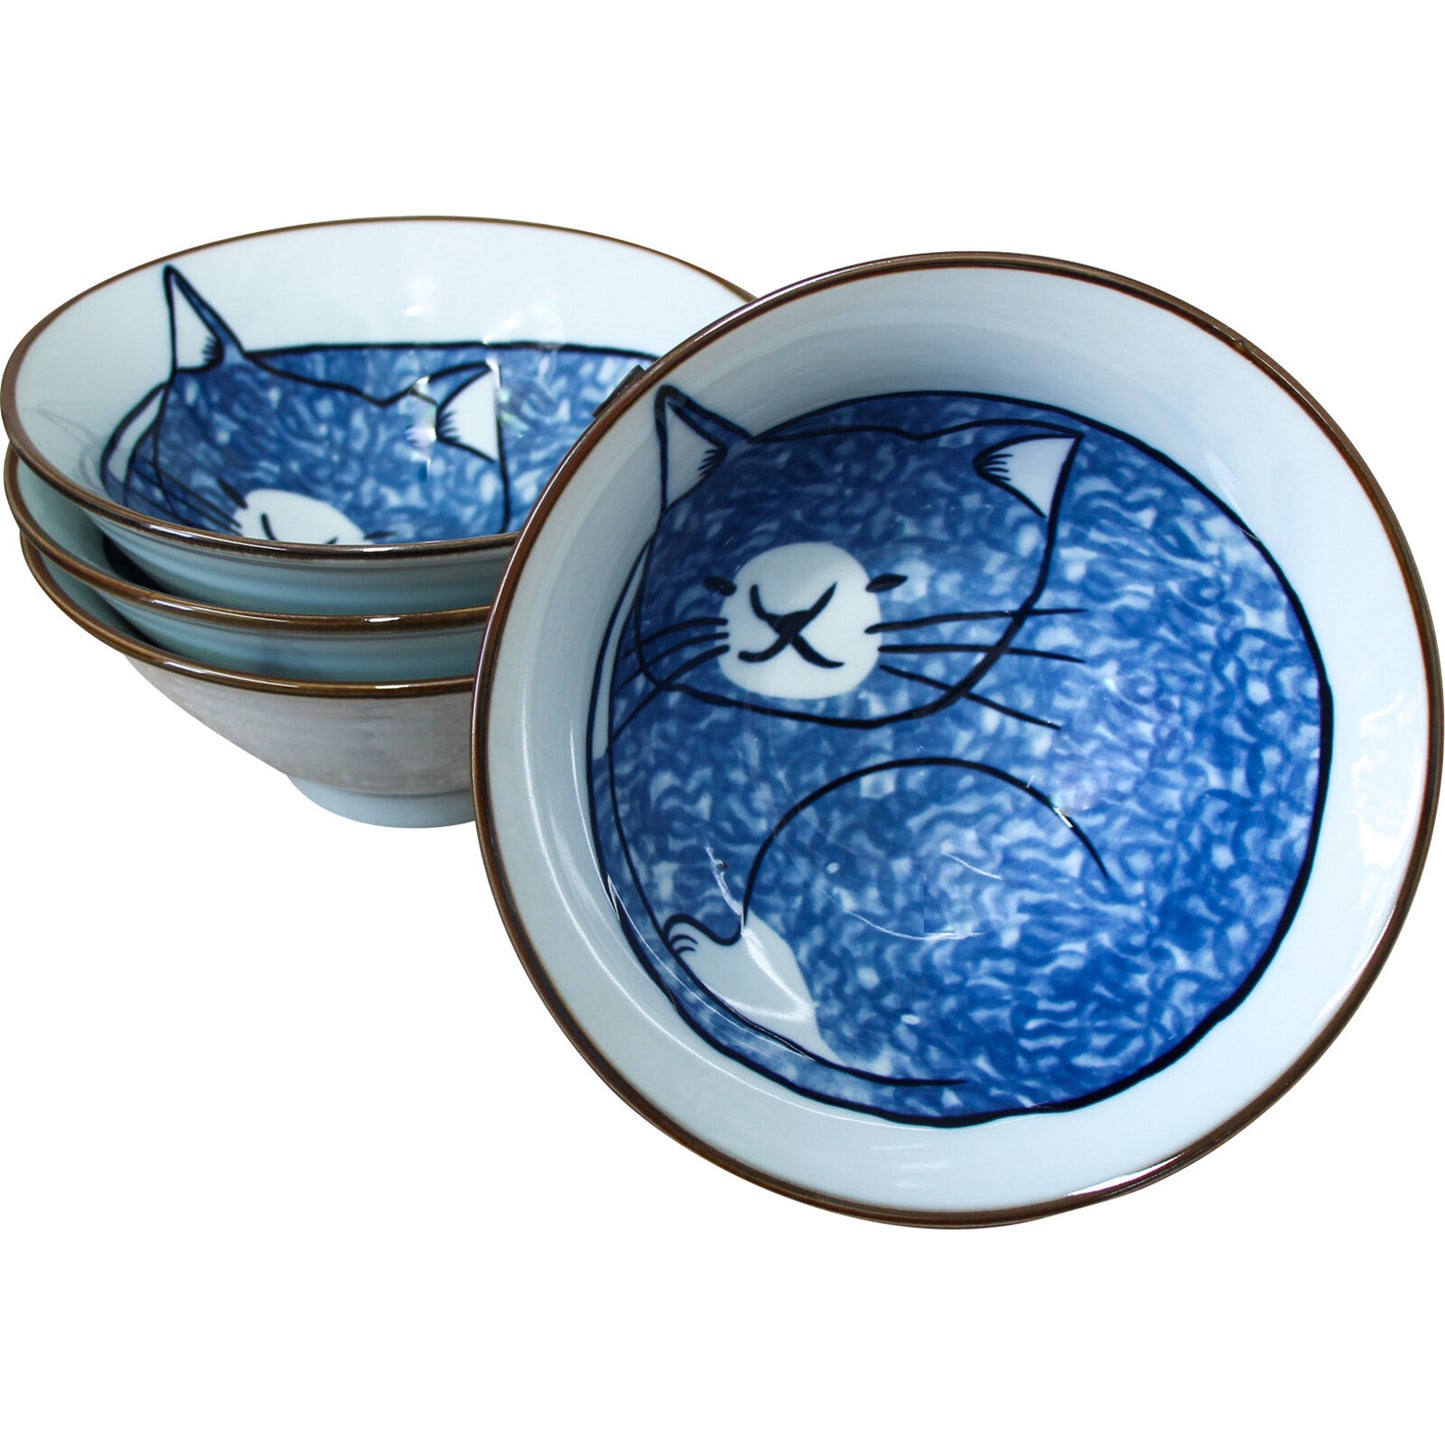 Sleepy Cat Bowl - large